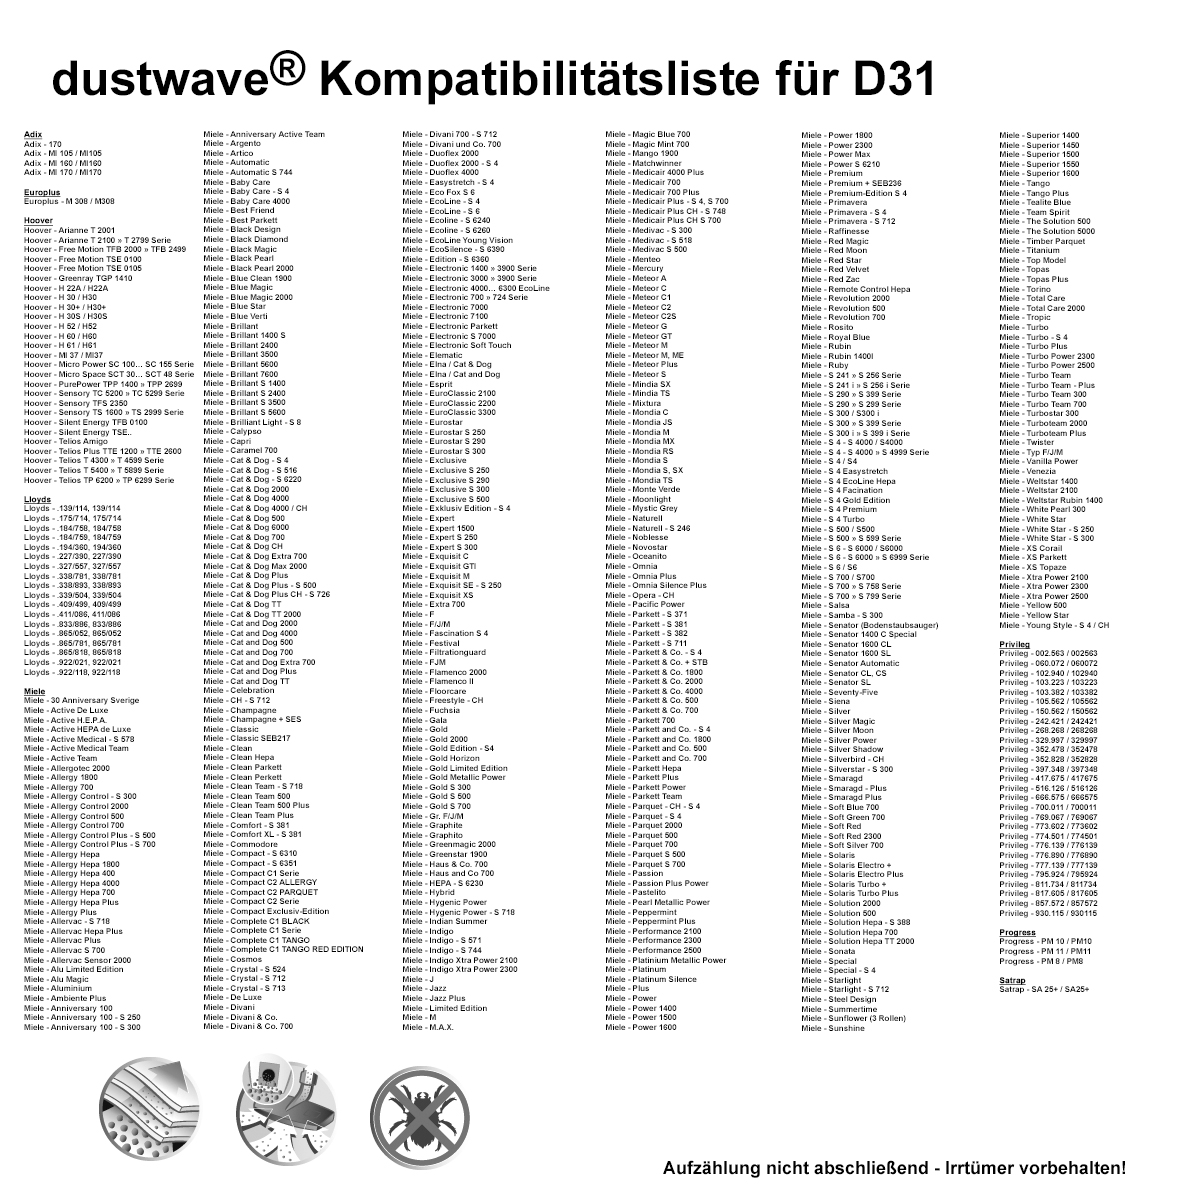 Dustwave® 20 Staubsaugerbeutel für Miele S5111 / S 5111 - hocheffizient, mehrlagiges Mikrovlies mit Hygieneverschluss - Made in Germany